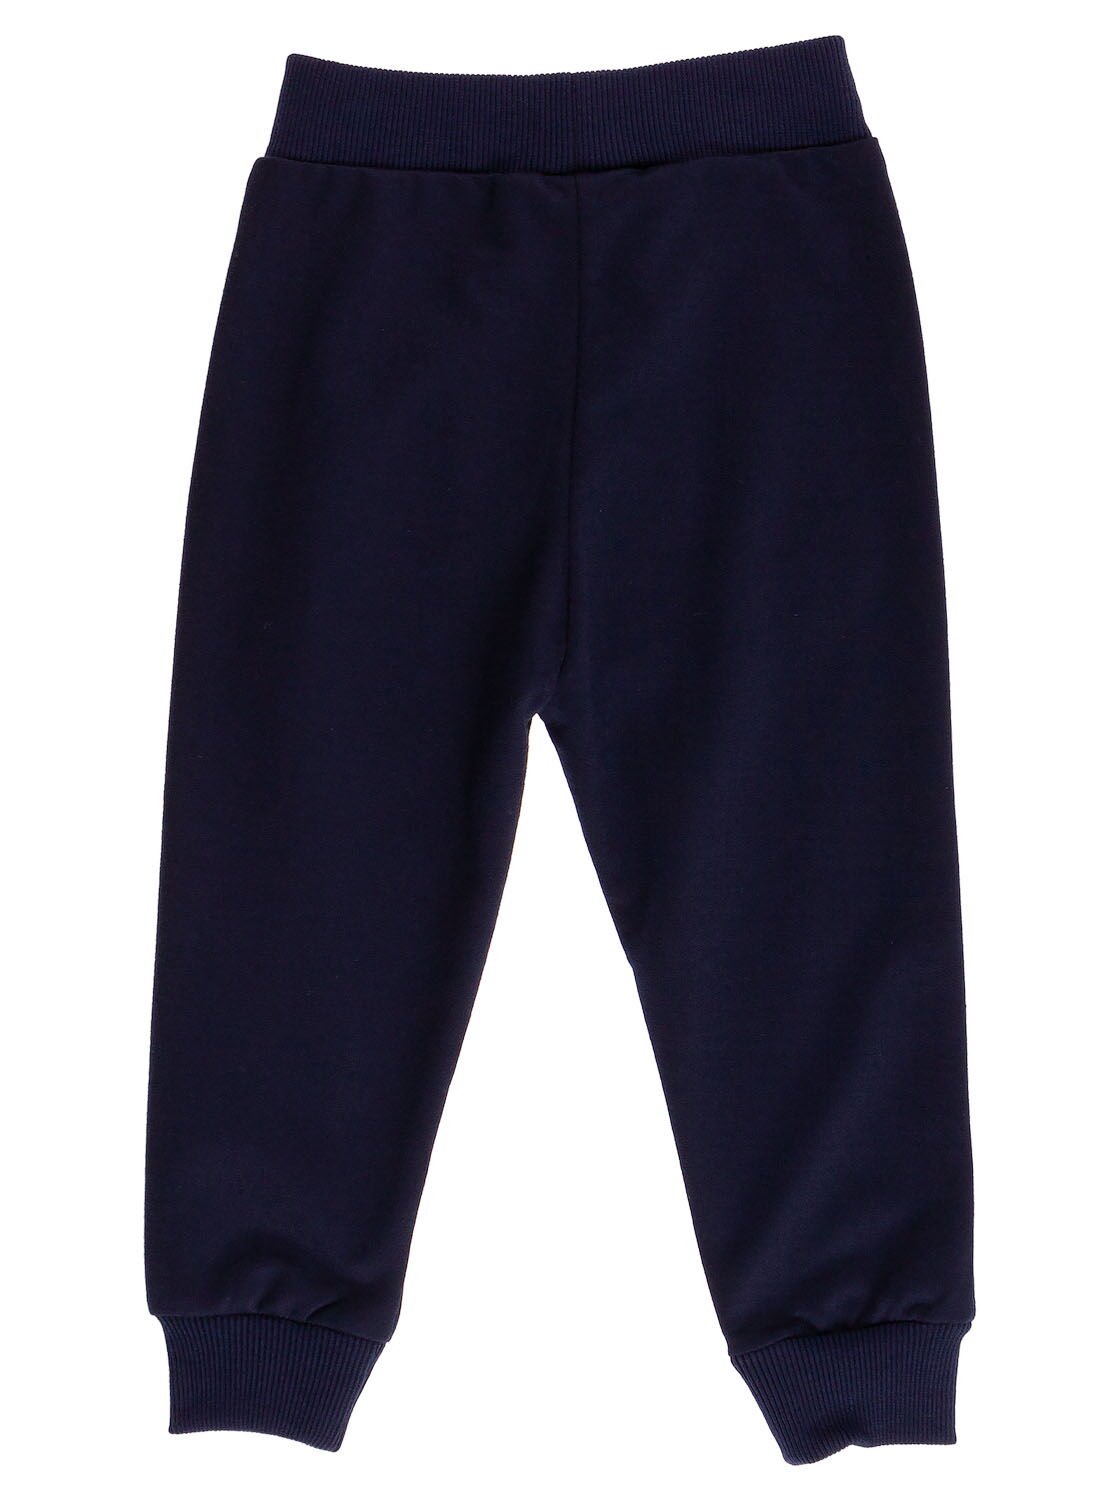 Спортивные штаны для мальчика Sincere темно-синие 2309 - размеры